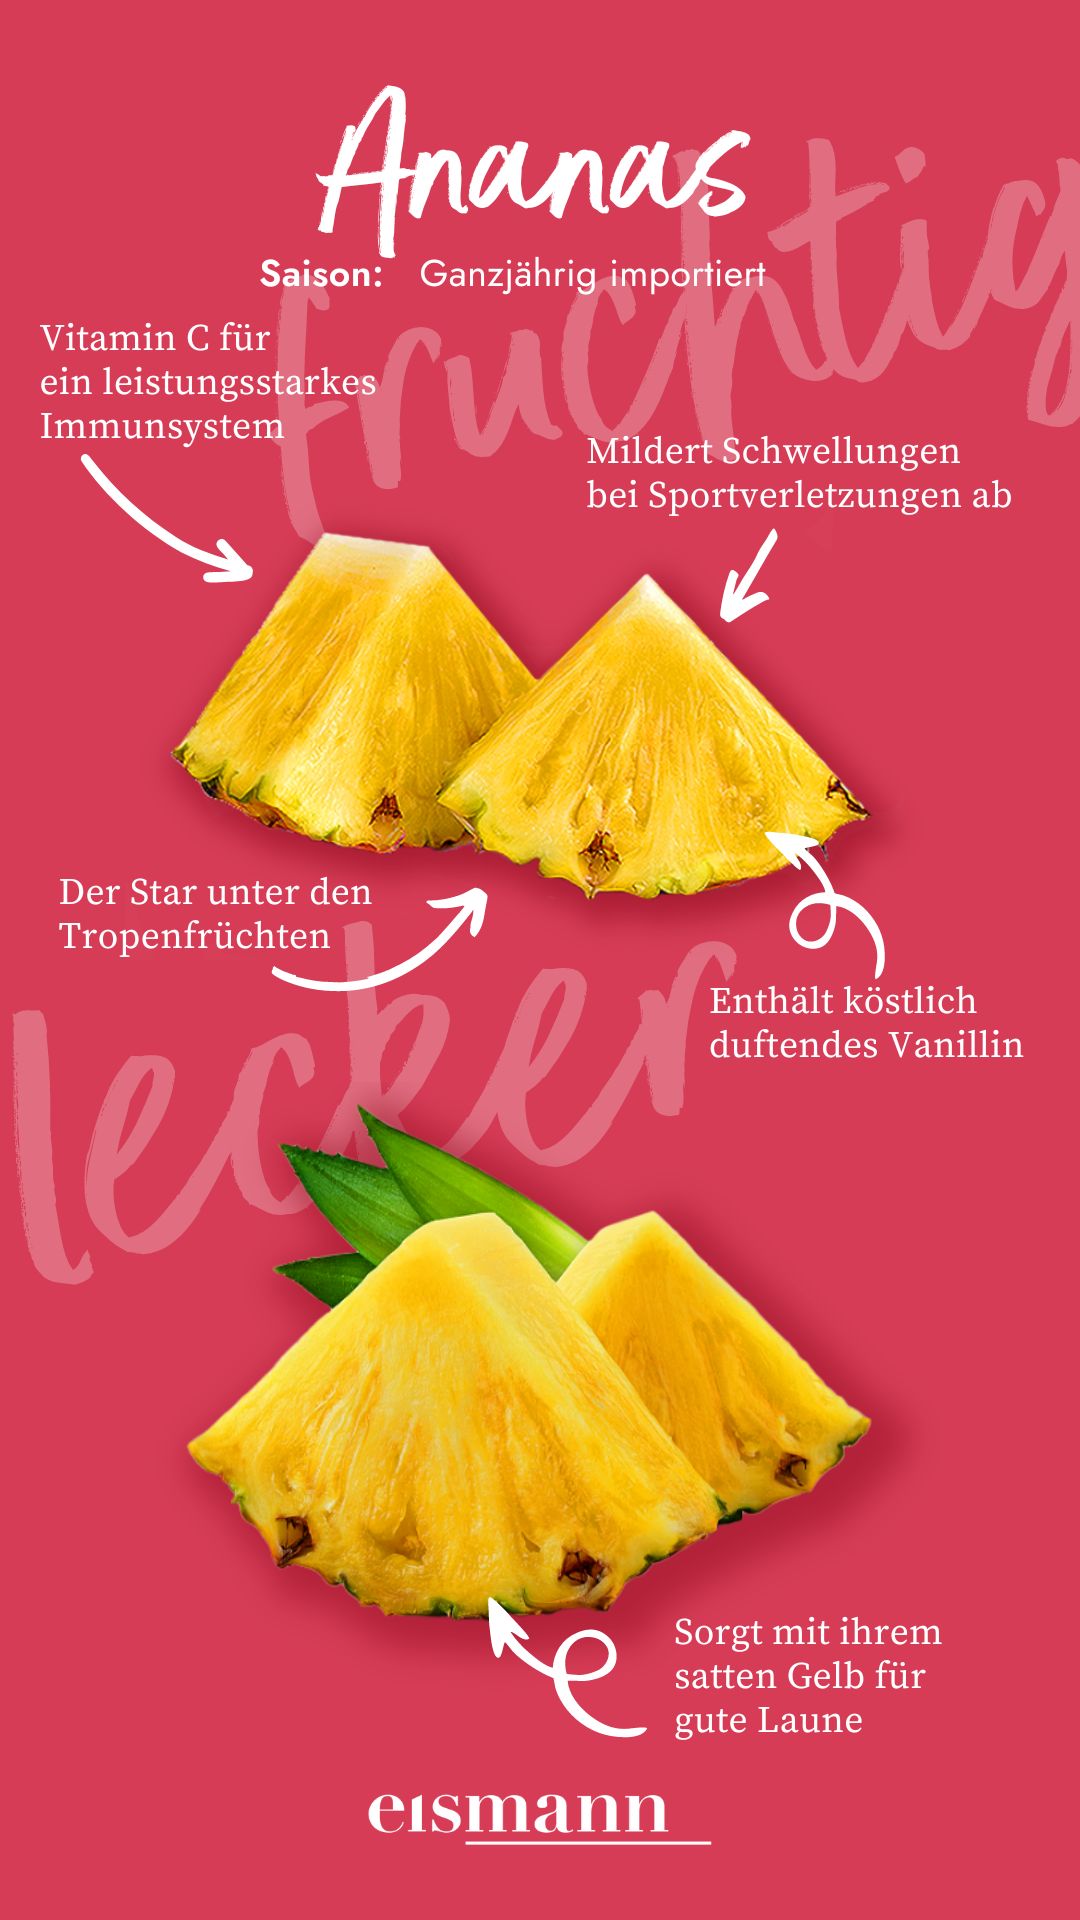 Ananas - Eigenschaften, Saison und Vorteile in der Ernährung